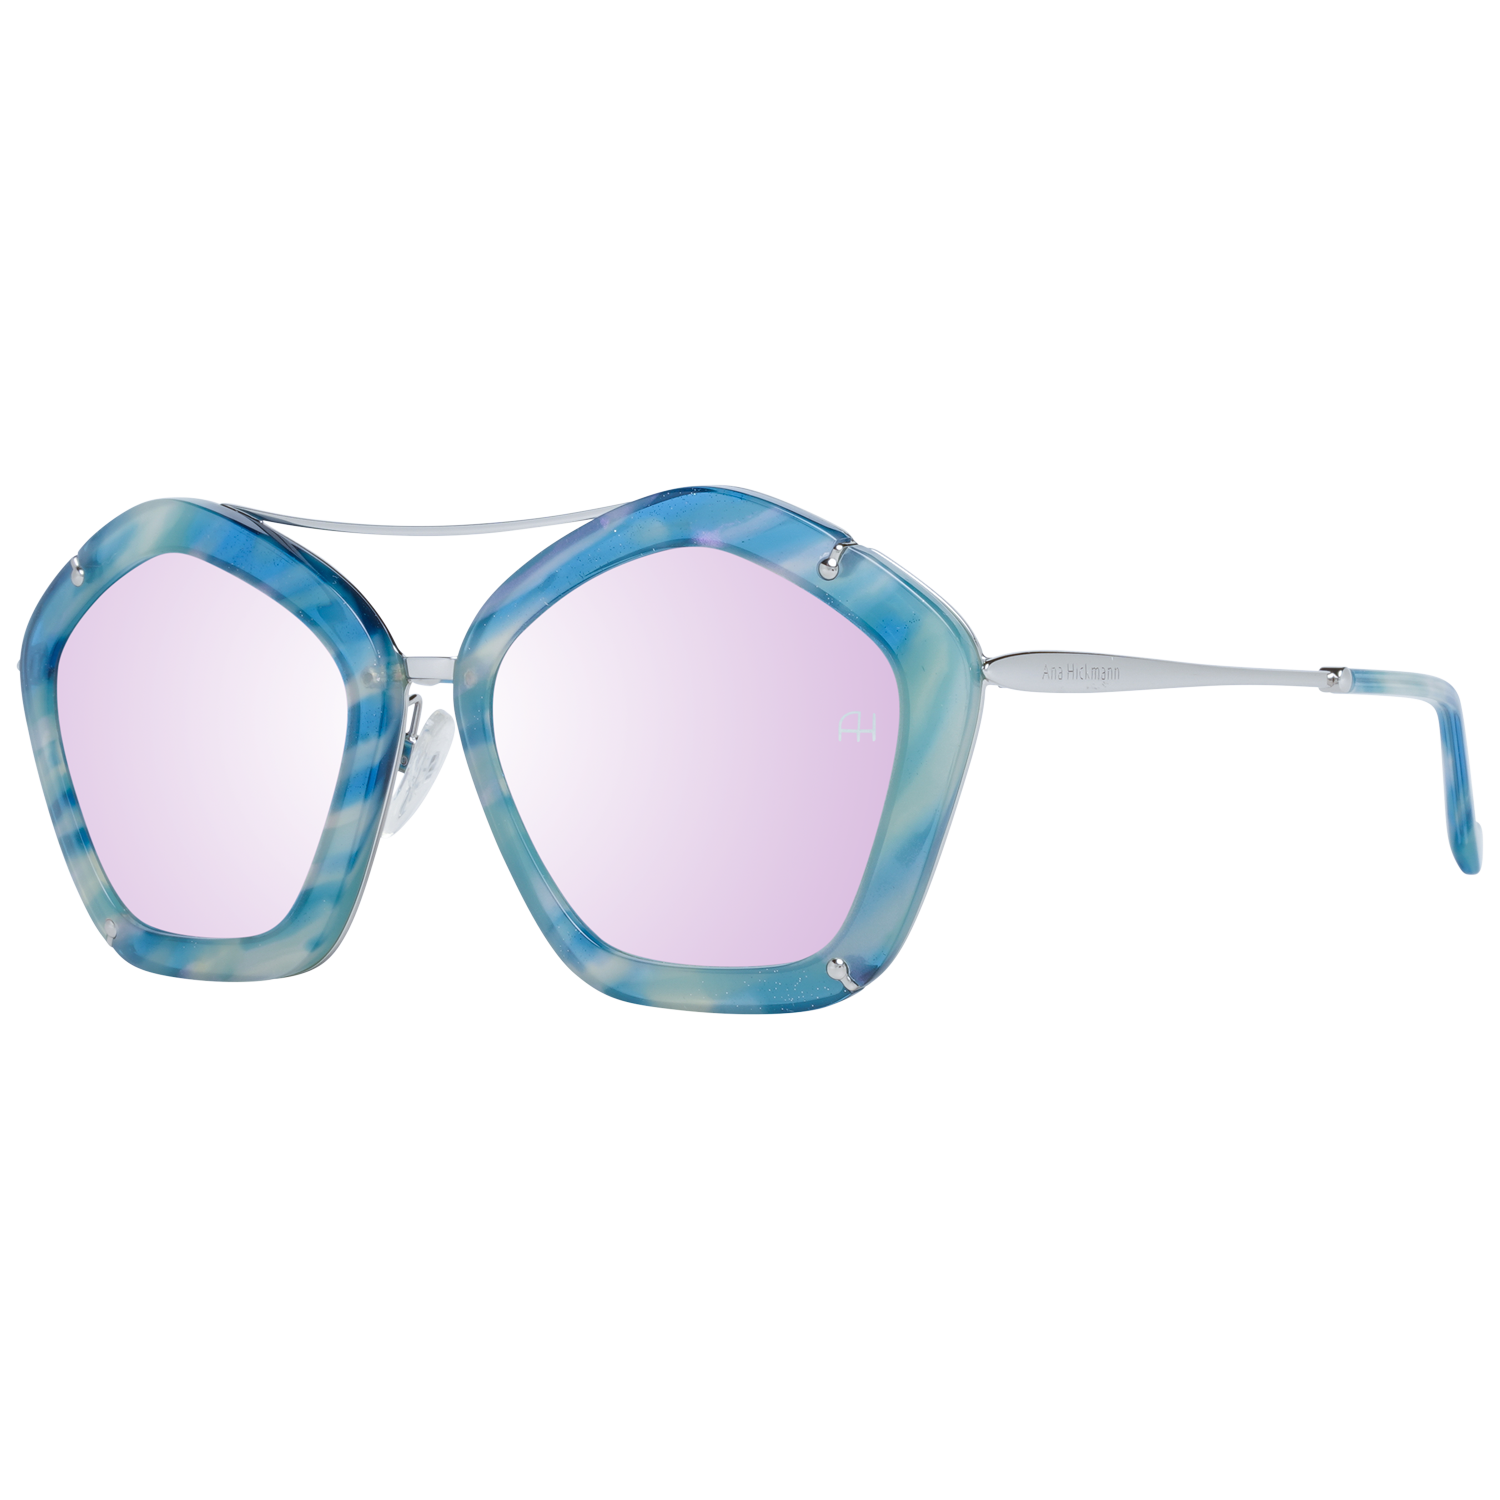 Ana Hickmann Sunglasses Ana Hickmann Sunglasses AH3165 G23 56mm Eyeglasses Eyewear UK USA Australia 